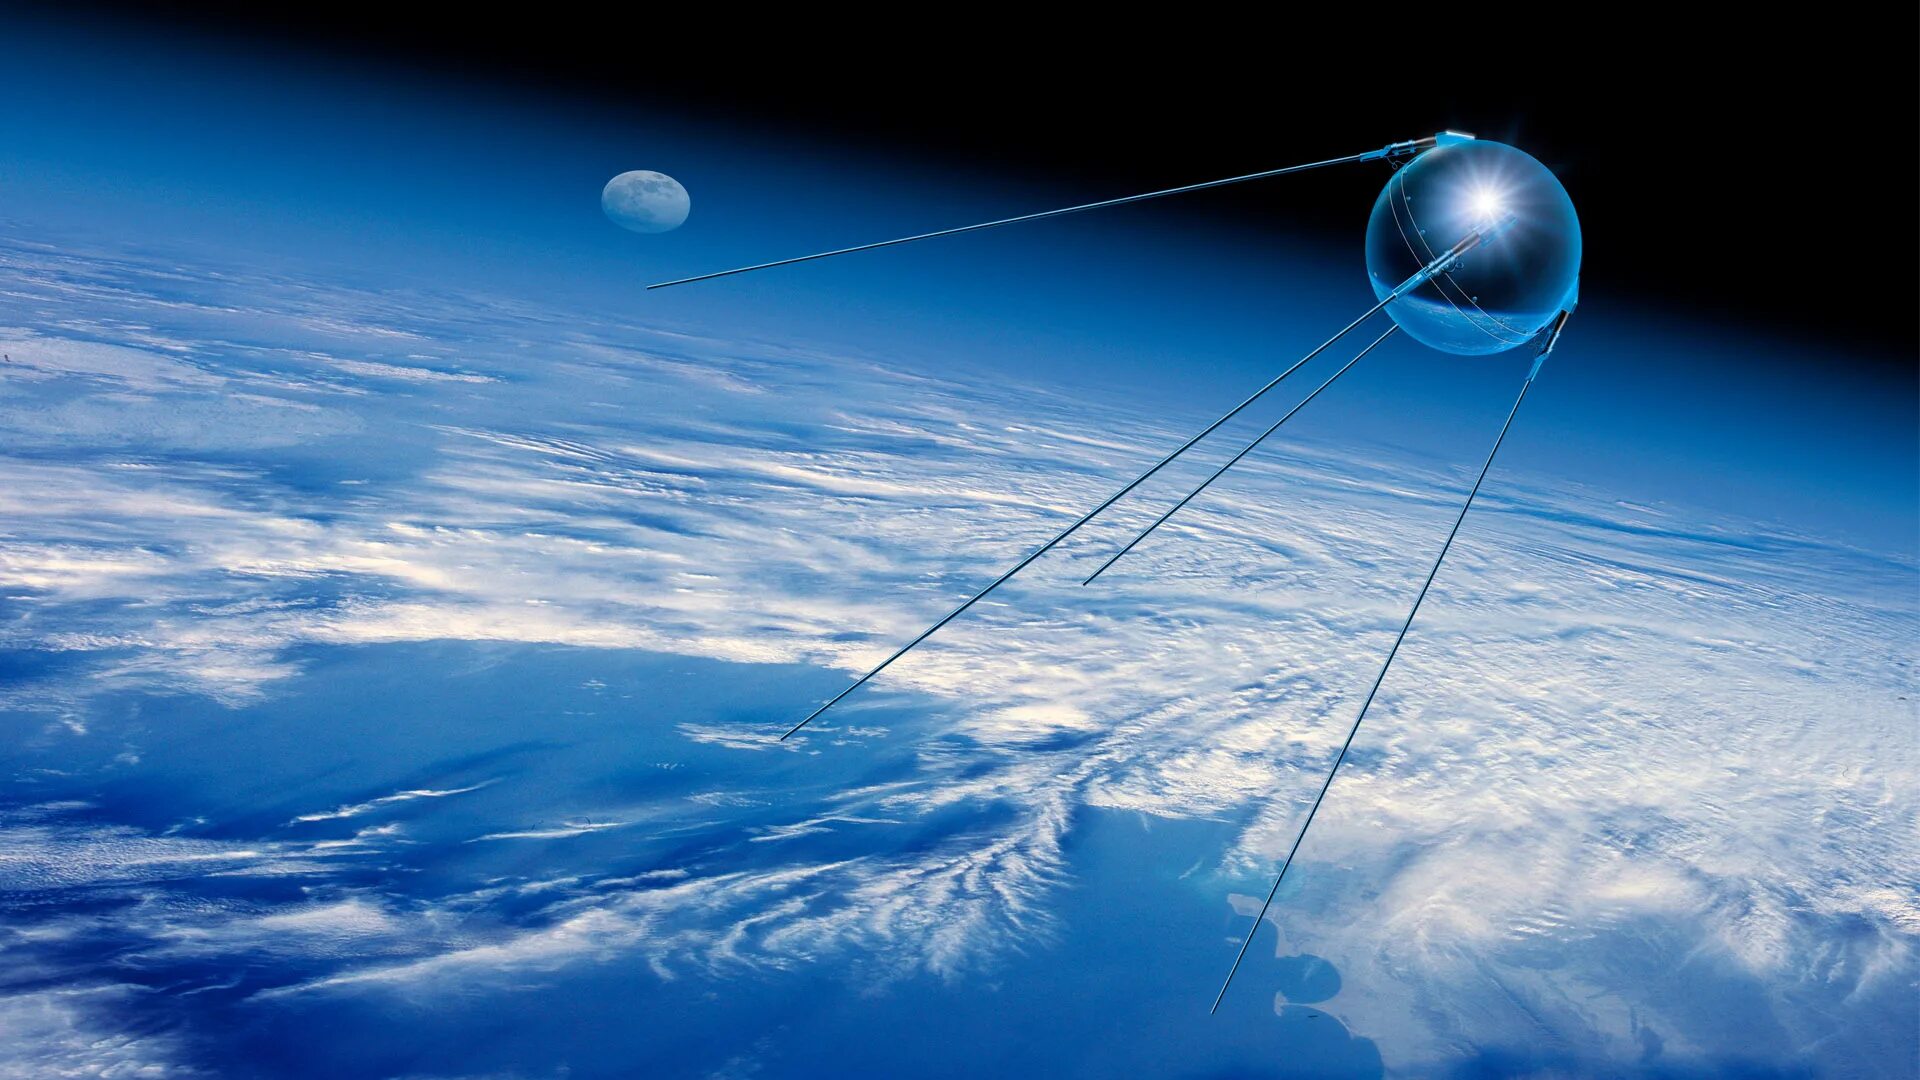 Спутник 1 первый искусственный Спутник земли. «Спутник-1», первый искуссттвенный Спутник. Первый искусственный Спутник земли 1957. ПС-1 Спутник. Какое имя носил 1 искусственный спутник земли